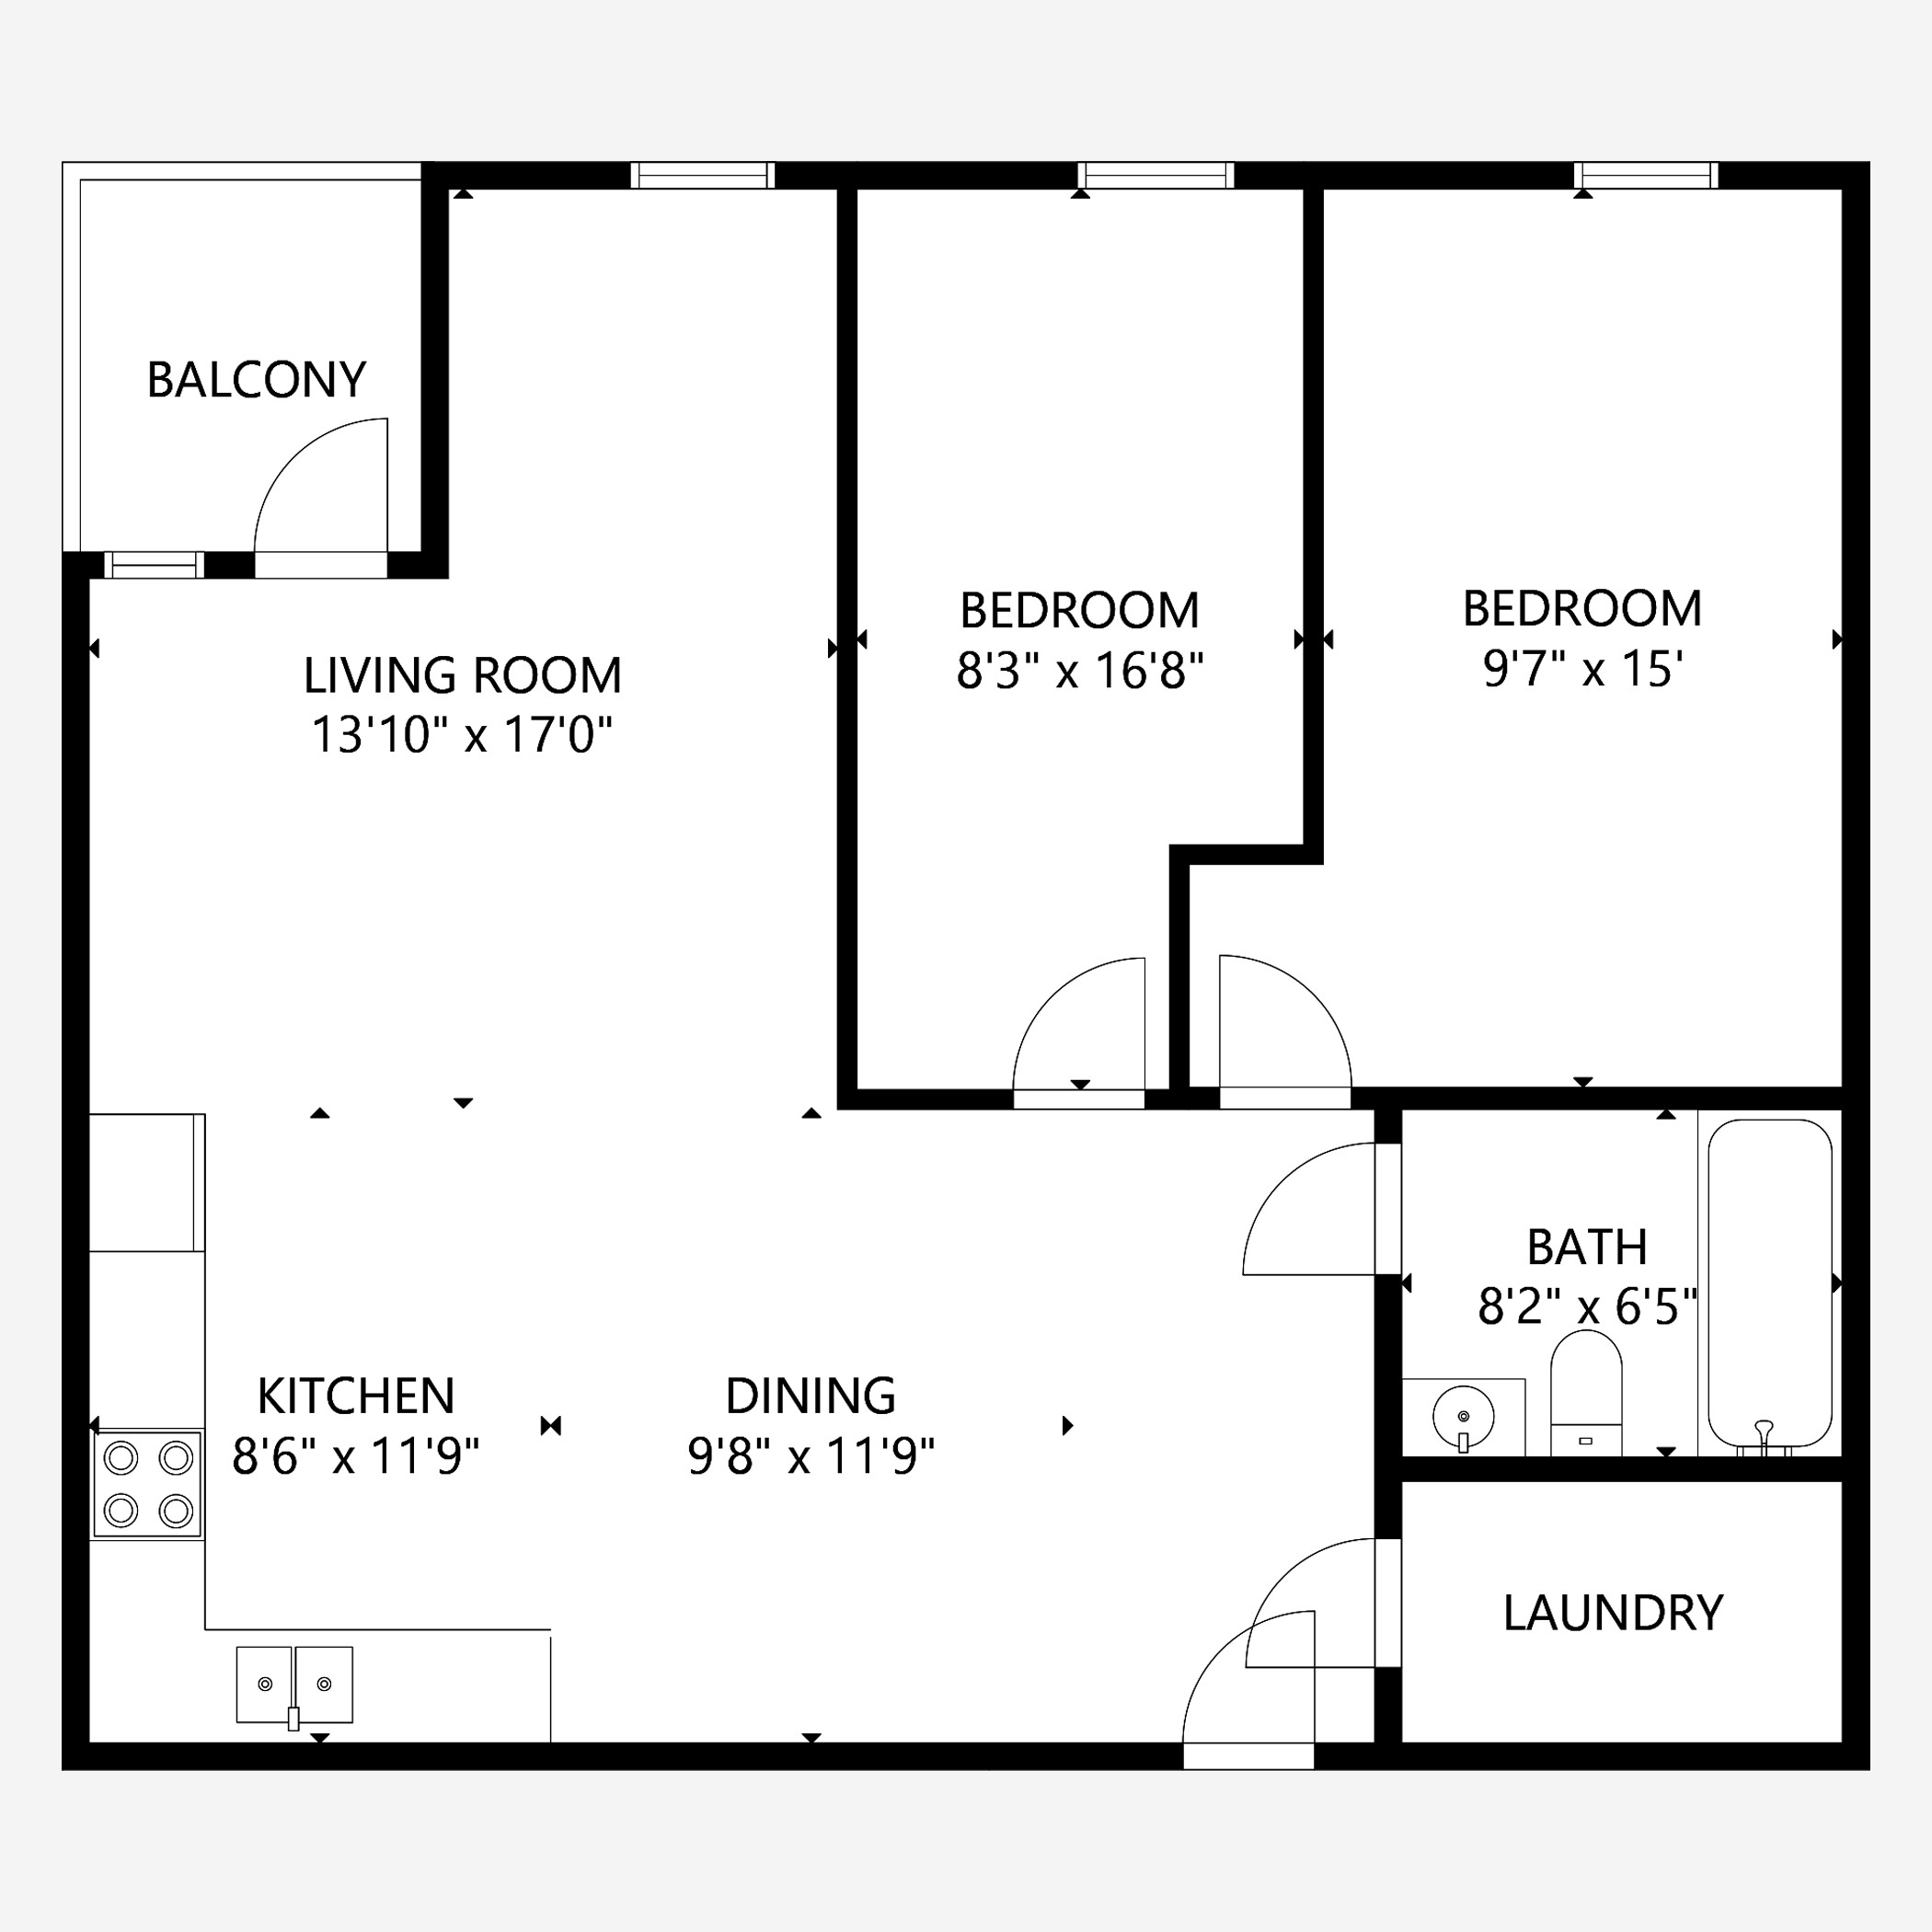 2D Floor Plan - Home3ds